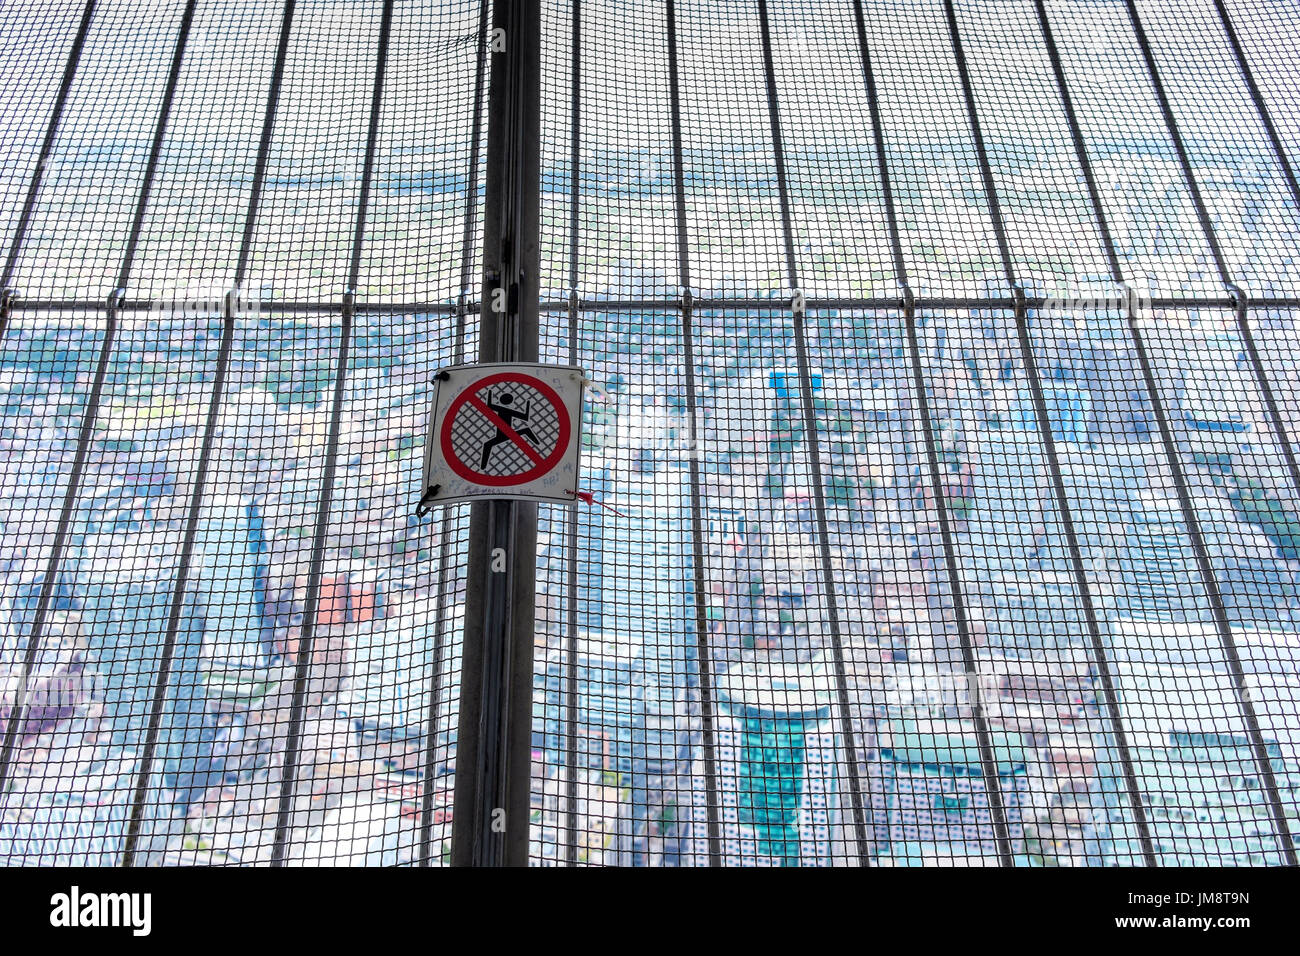 Warnung nicht klettern oder Klettern verboten Schild Ideogramm Ideogramme auf Metallgitter, CN Tower Aussichtsplattform. Im Stadtzentrum gelegenes Toronto wird durch Netz gesehen. Stockfoto